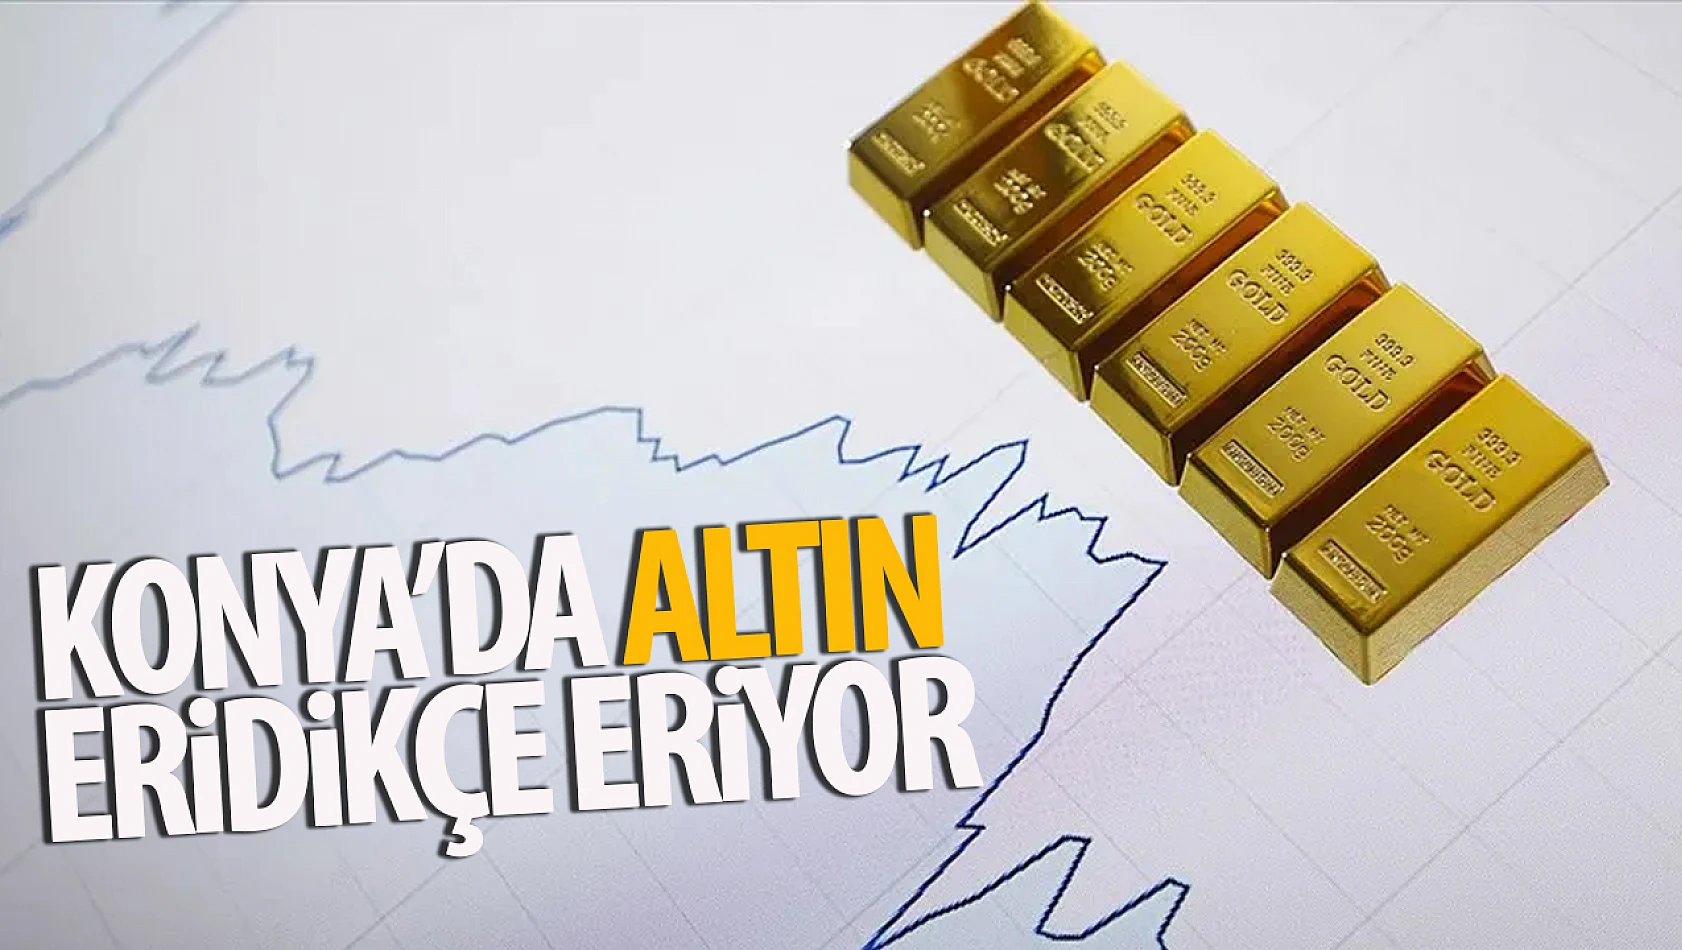 Konya'da Altın Fiyatları Düşüş Trendinde Devam Ediyor